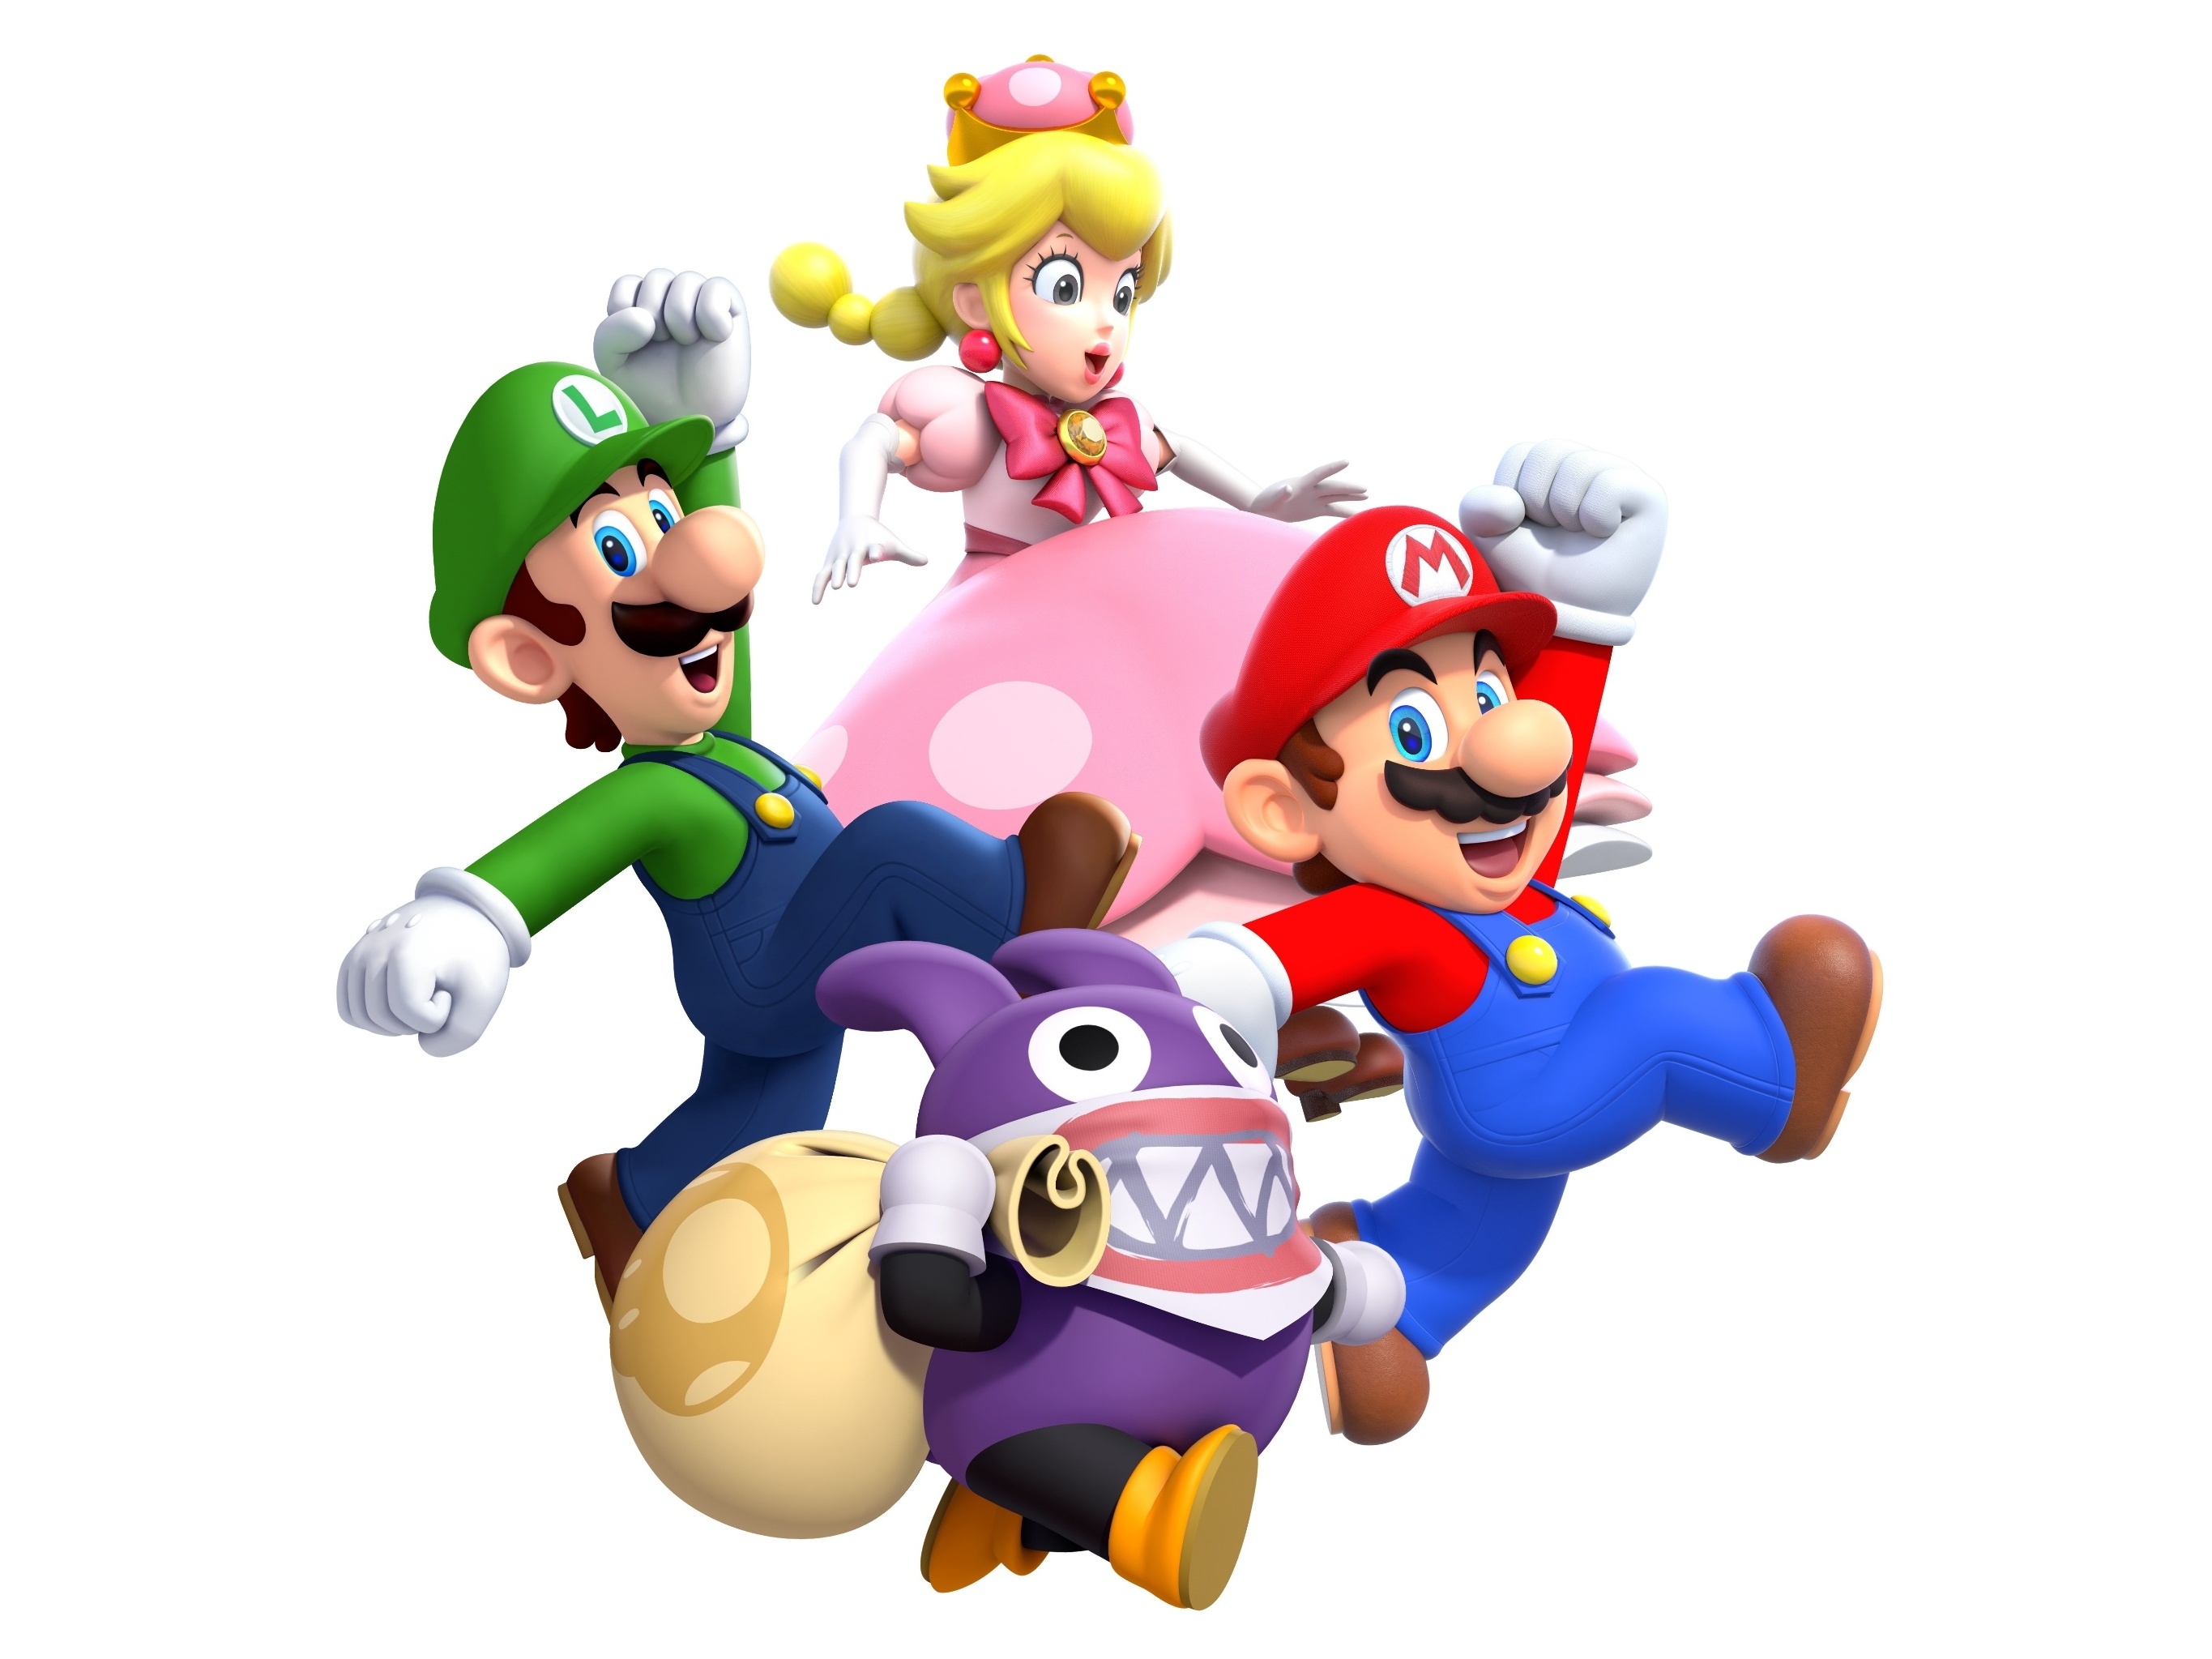 Dicas de Super Mario World para mandar bem no clássico jogo da Nintendo